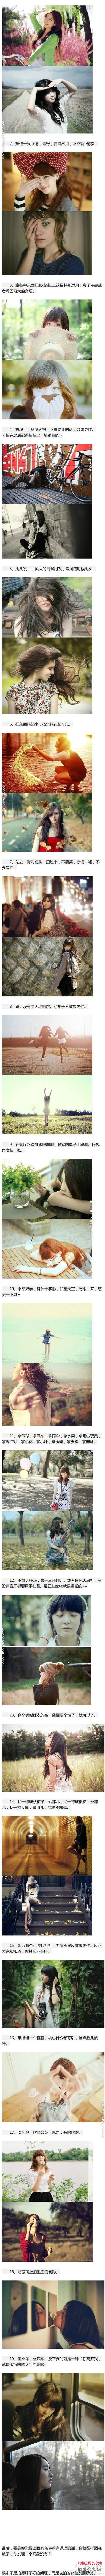 19招摄影小技巧，轻松把女朋友拍出文艺范儿~ -  www.shouyihuo.com